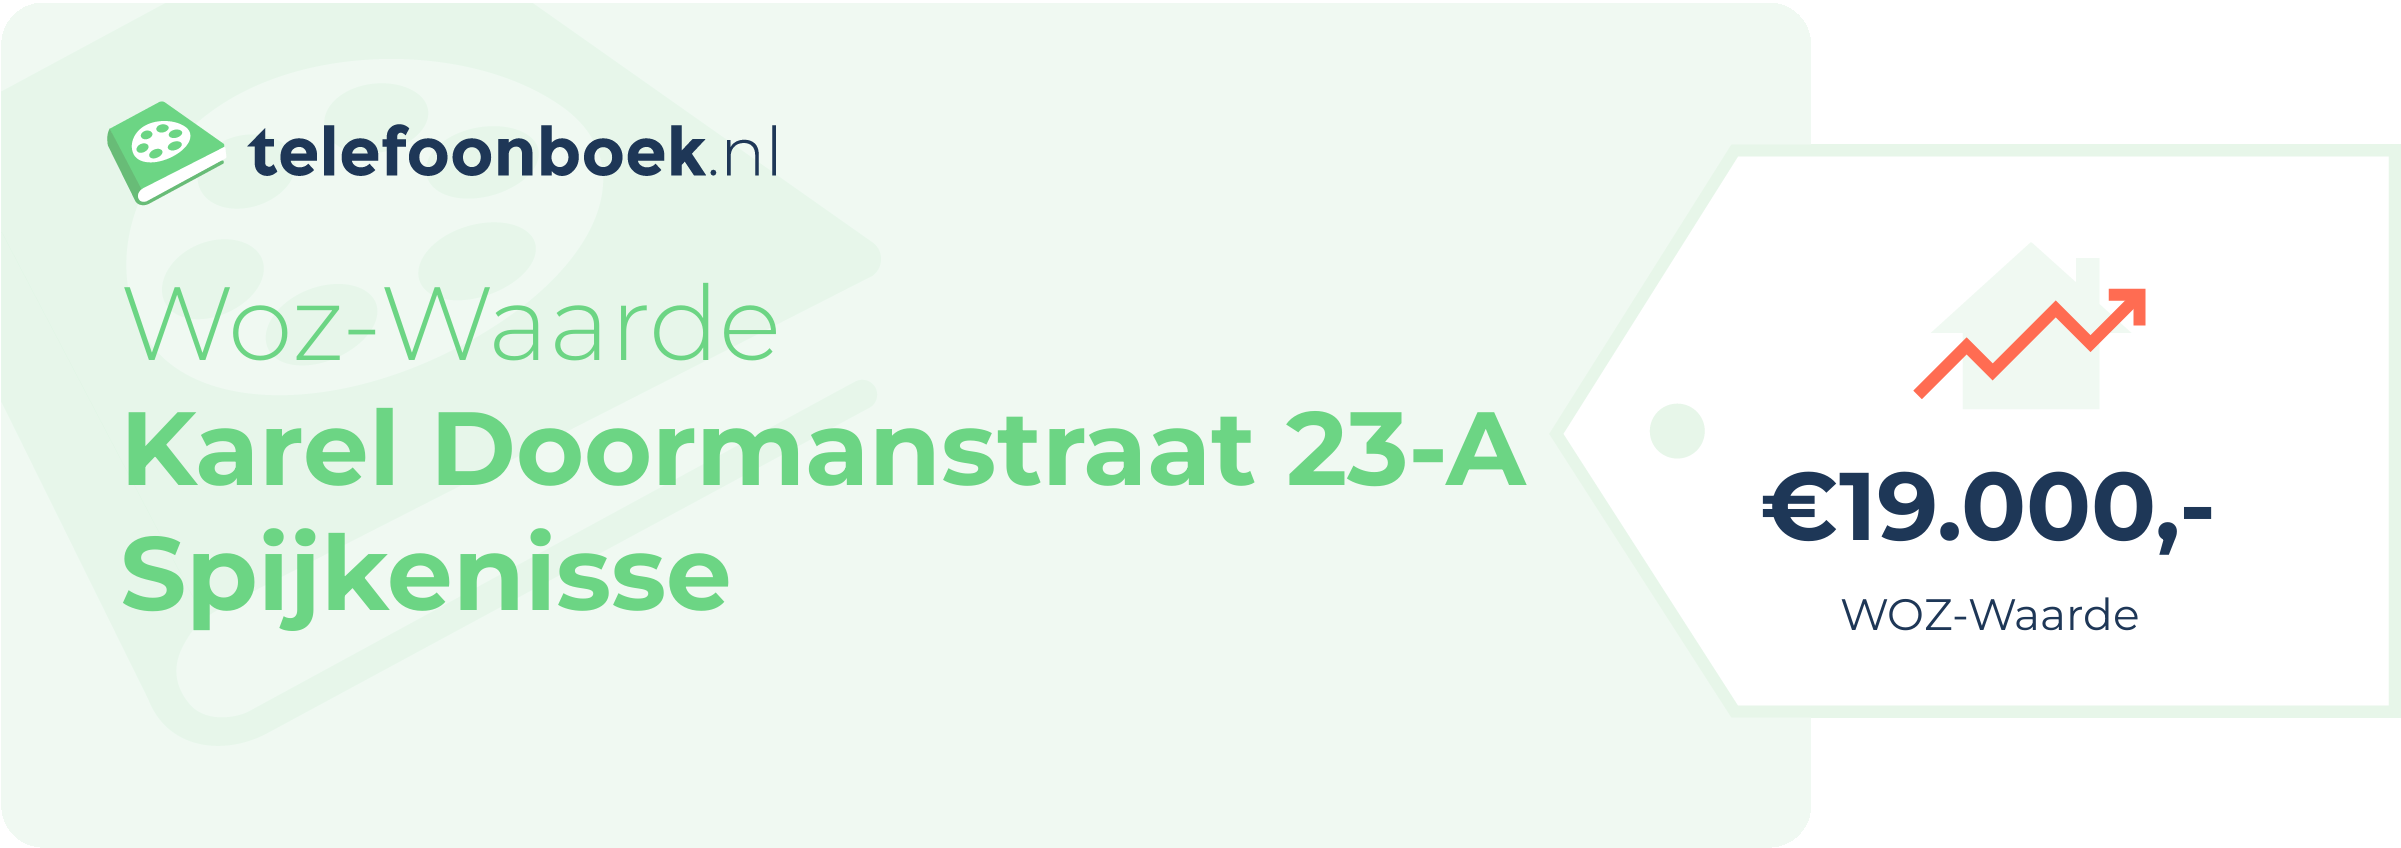 WOZ-waarde Karel Doormanstraat 23-A Spijkenisse